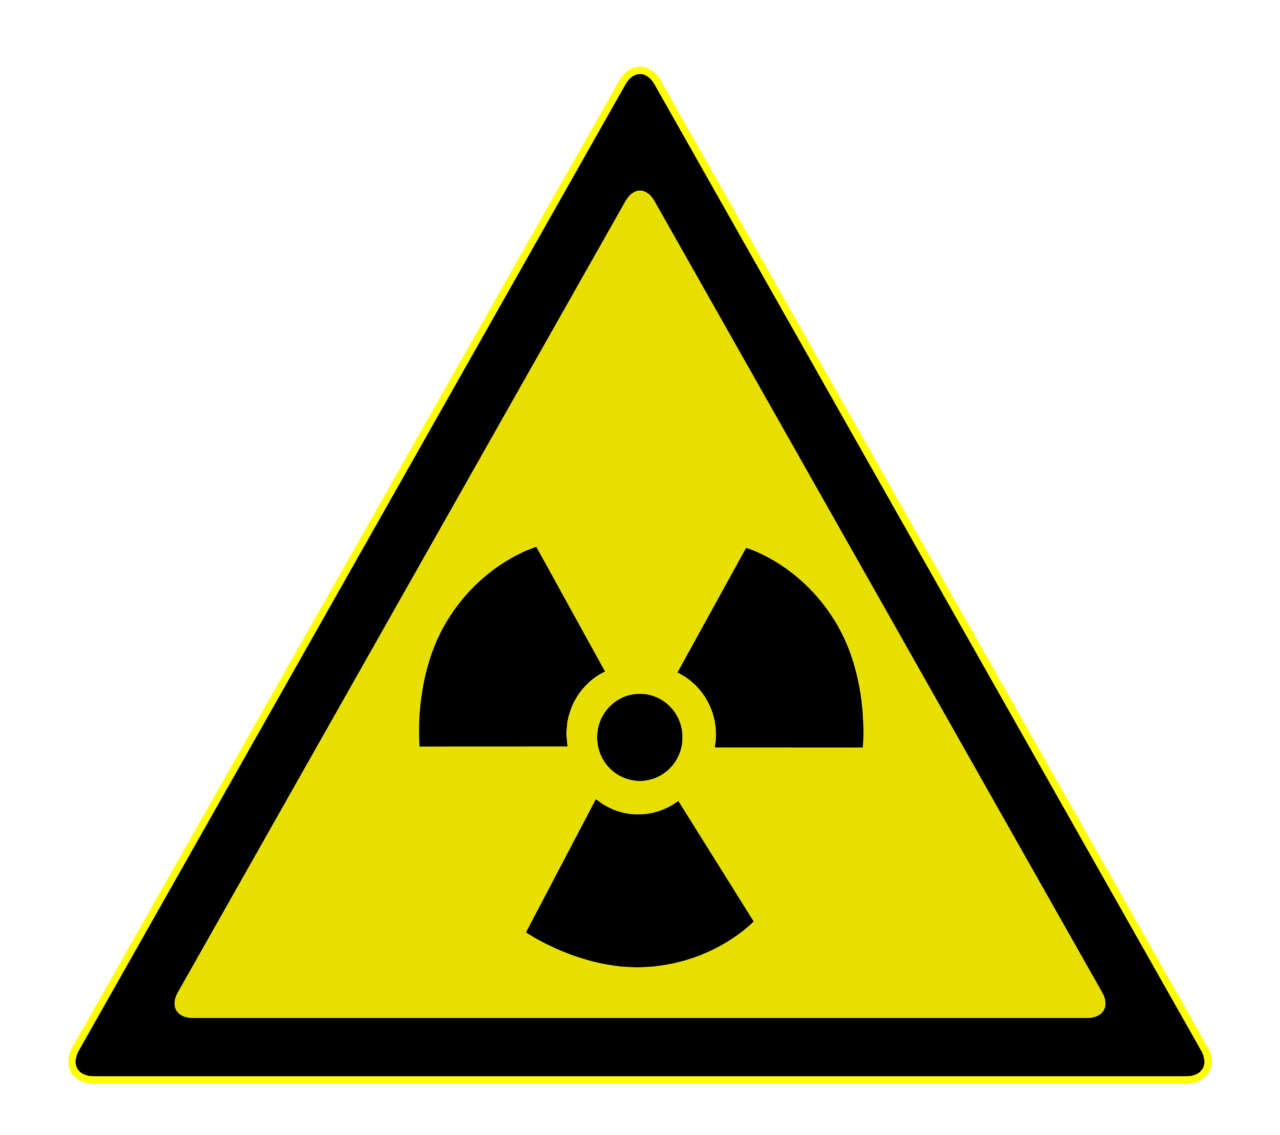 Esposizioni mediche a radiazioni ionizzanti, online gli esiti dell’indagine